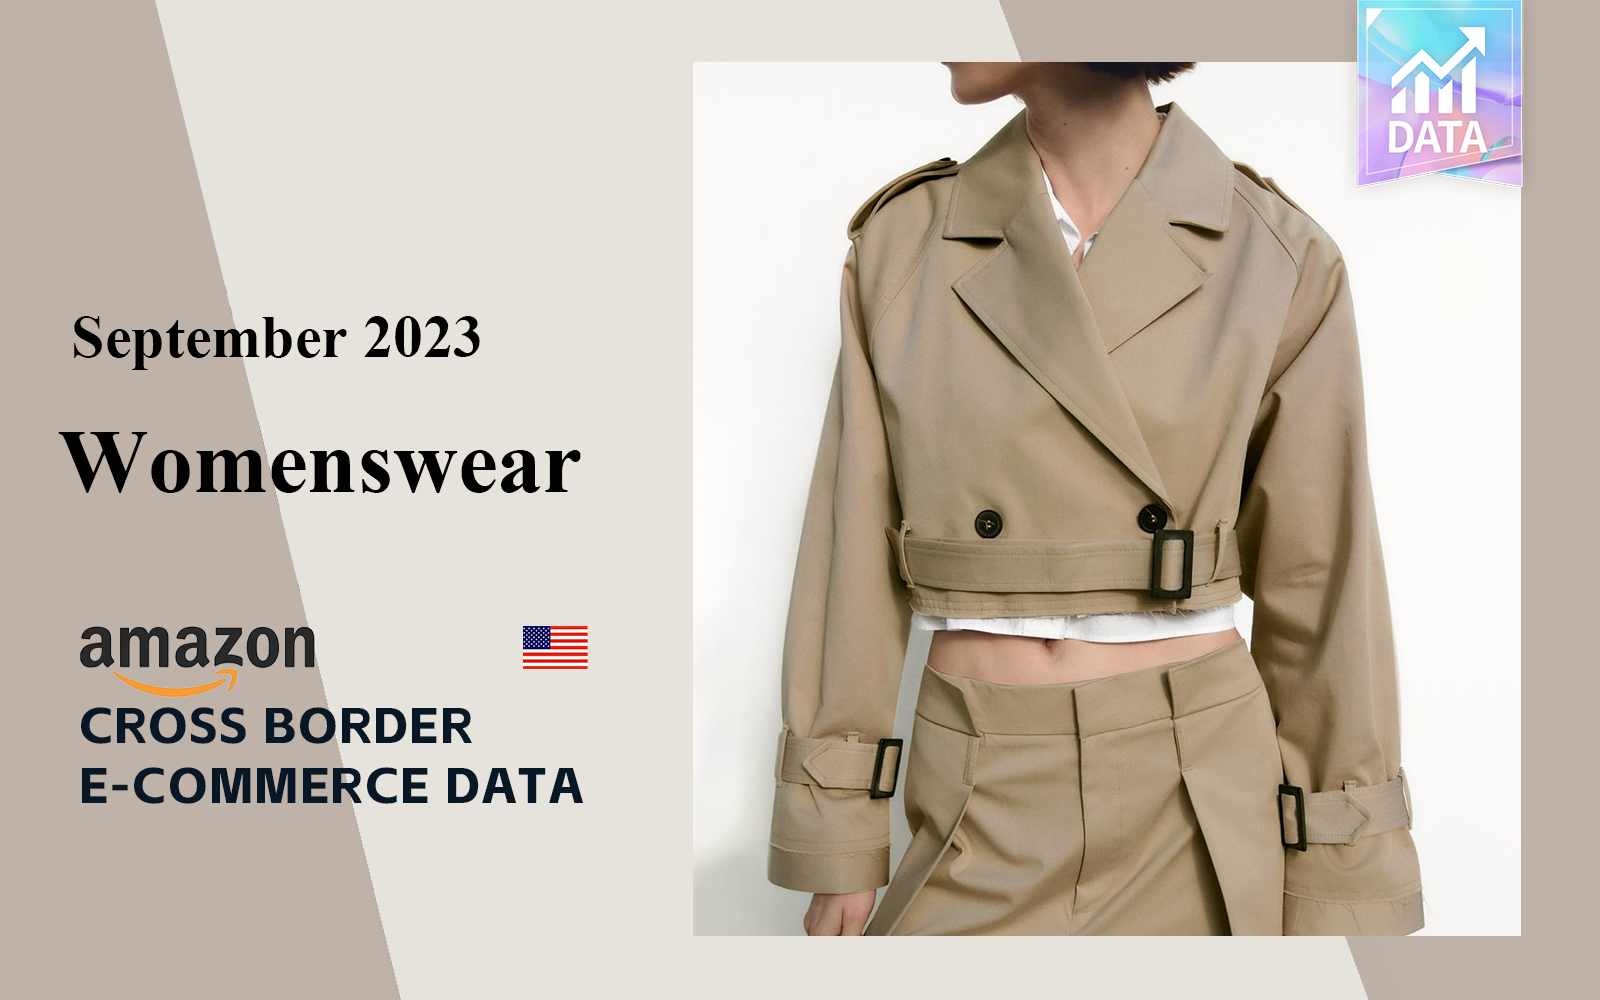 The Data Analysis of Cross-Border Womenswear E-commerce in September